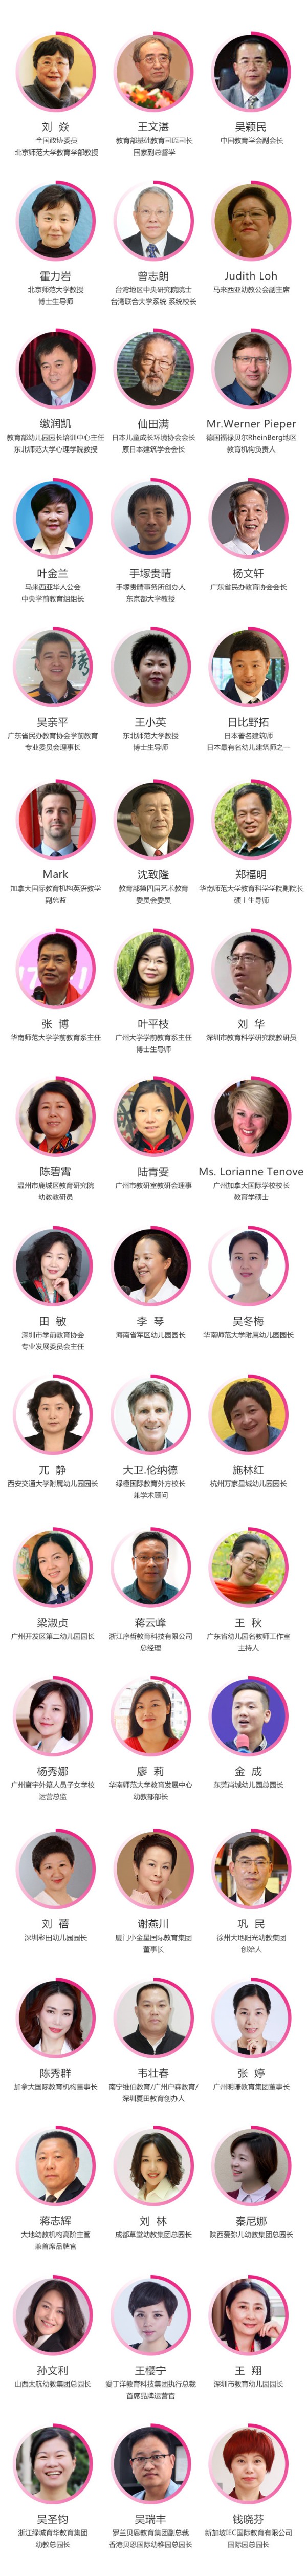 80位名师邀您相约中国幼教公益论坛西部峰会|2019成都幼教展开幕在即